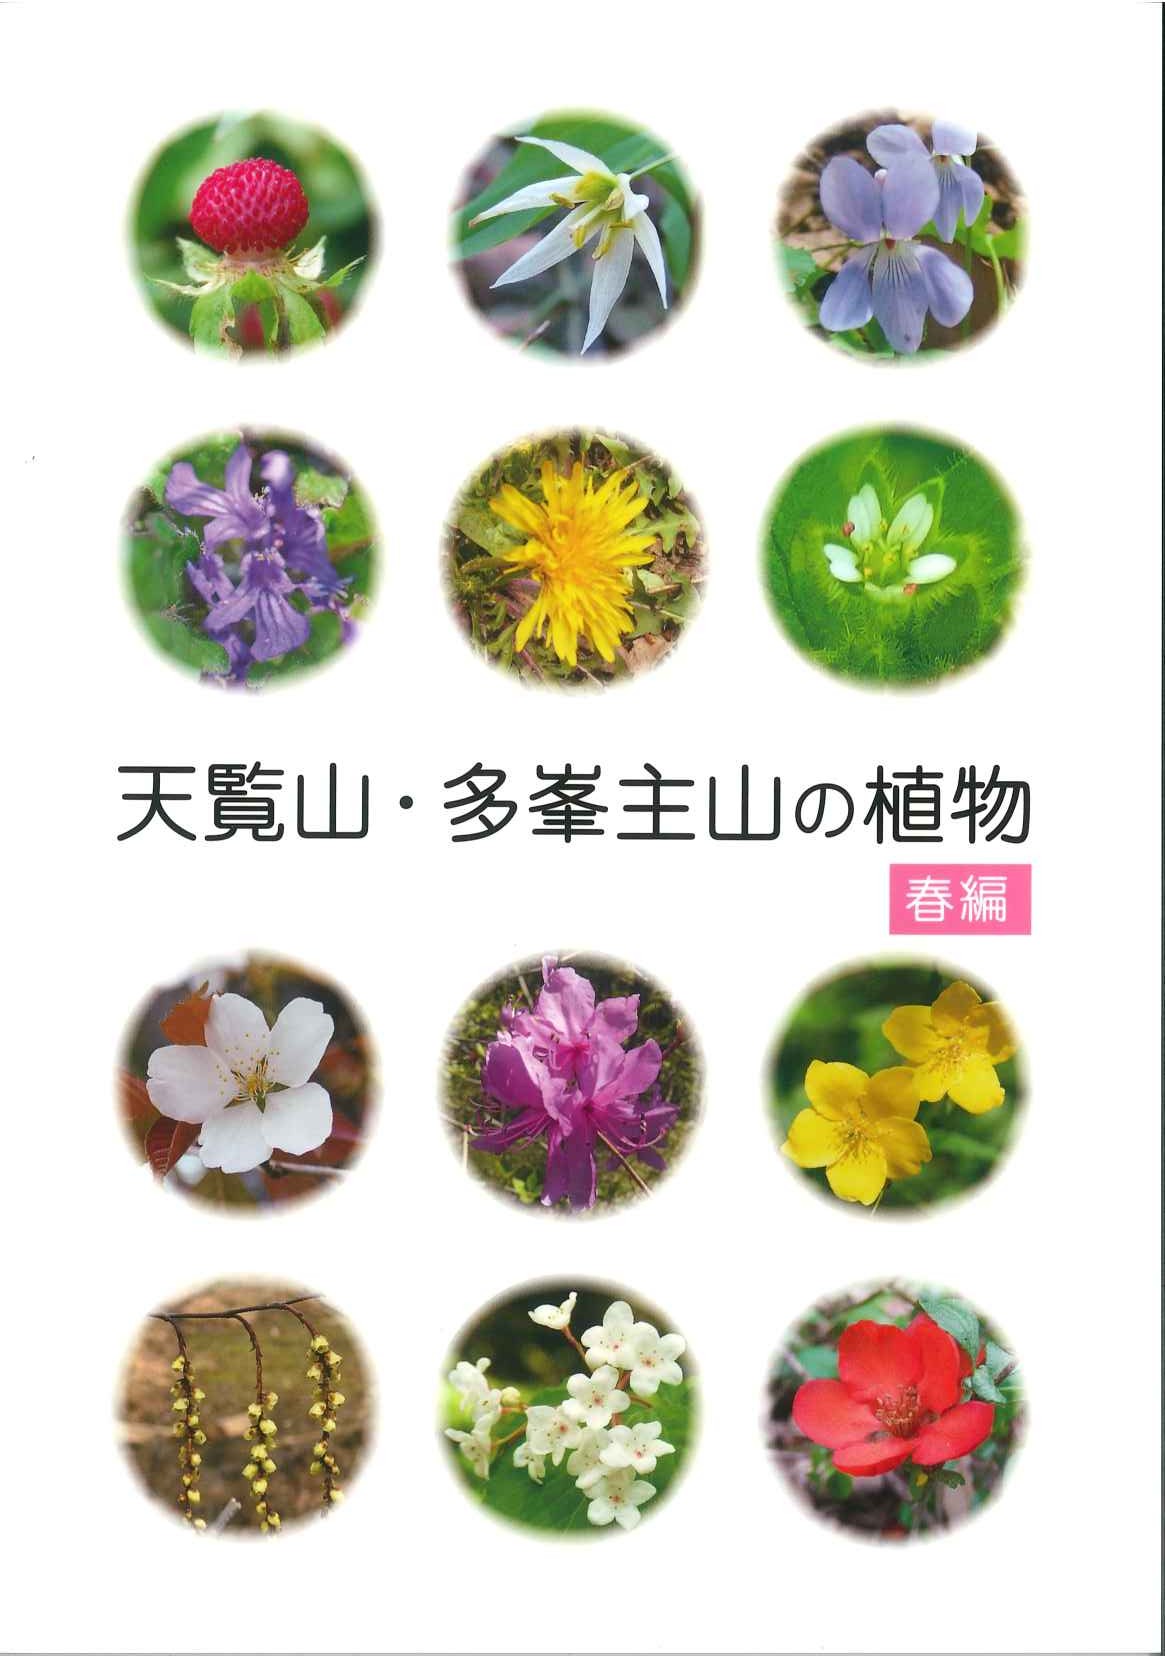 天覧山・多峯主山の植物春編の表紙の写真